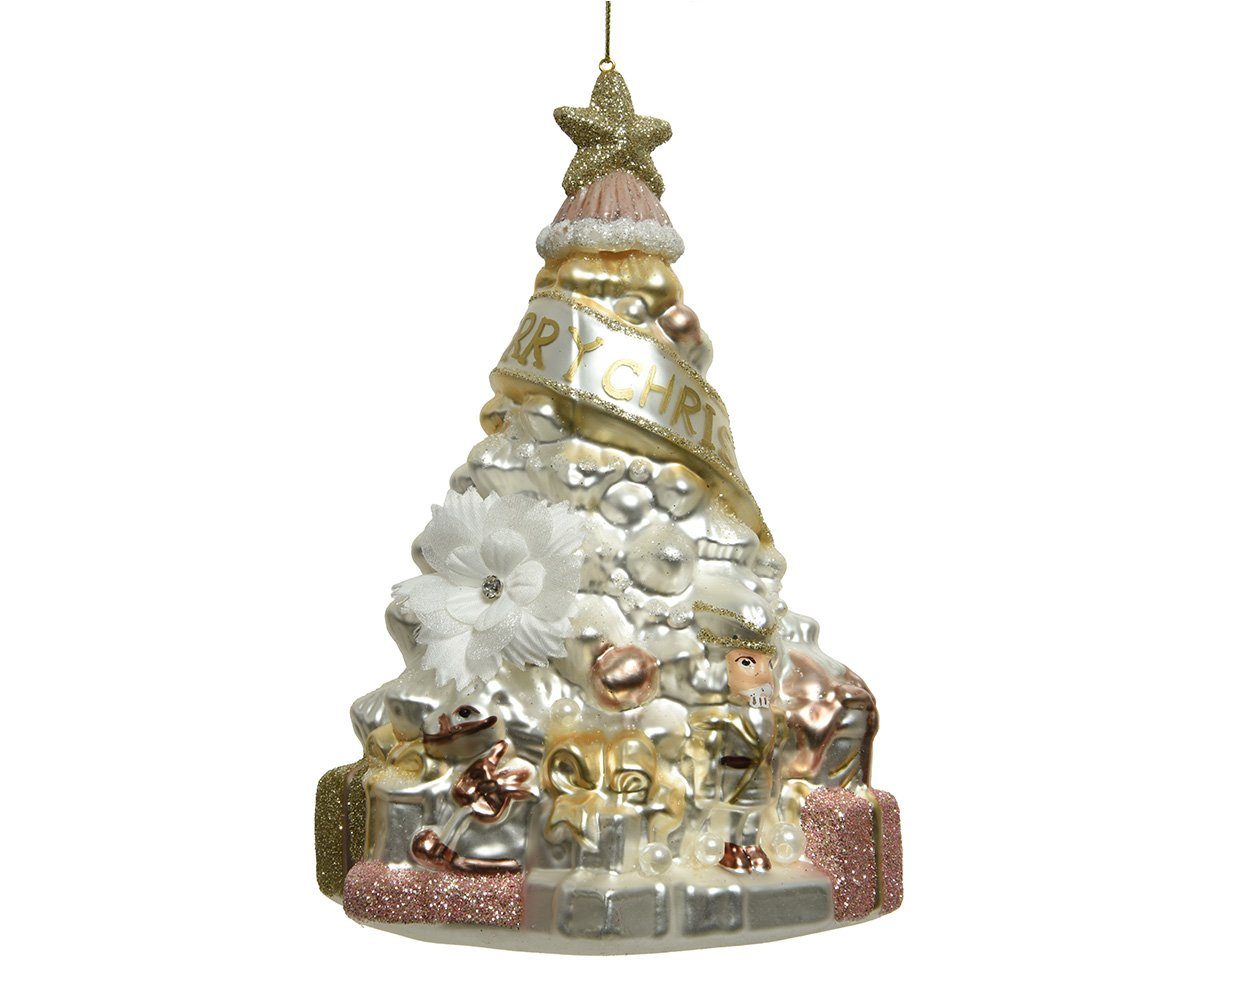 16cm Christbaumschmuck season Weihnachtsbaum gold rosa / weiß / Christbaumschmuck, Decoris decorations Glas